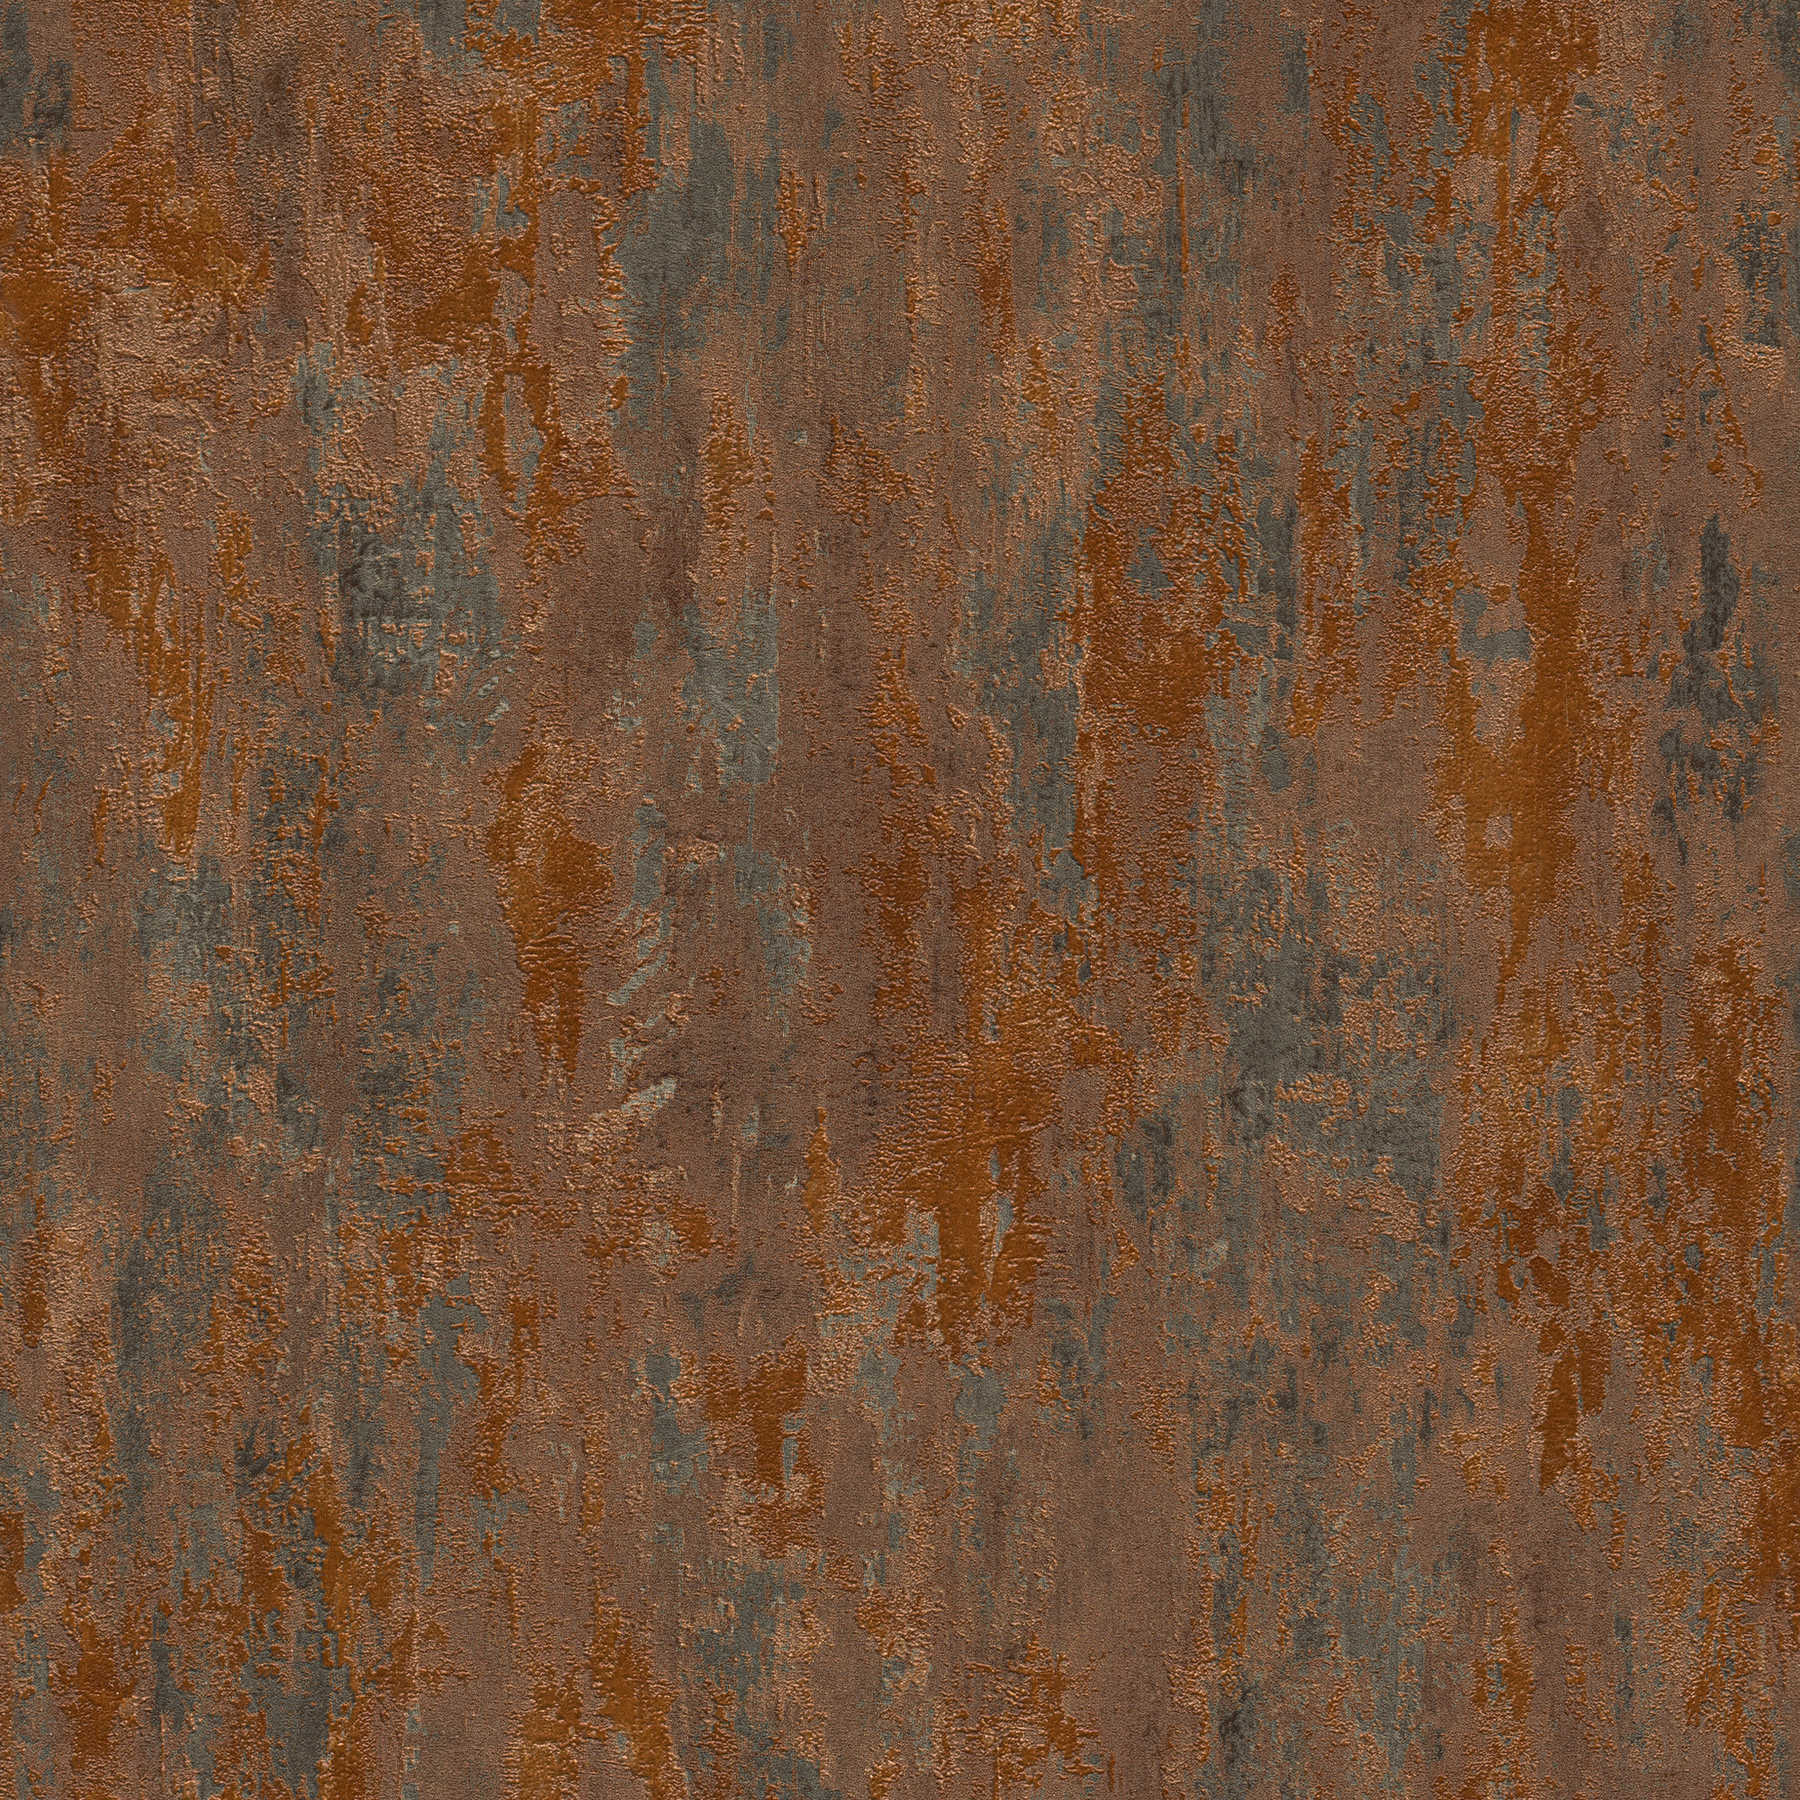             Papel pintado de cobre con efecto metálico y aspecto oxidado de estilo industrial
        